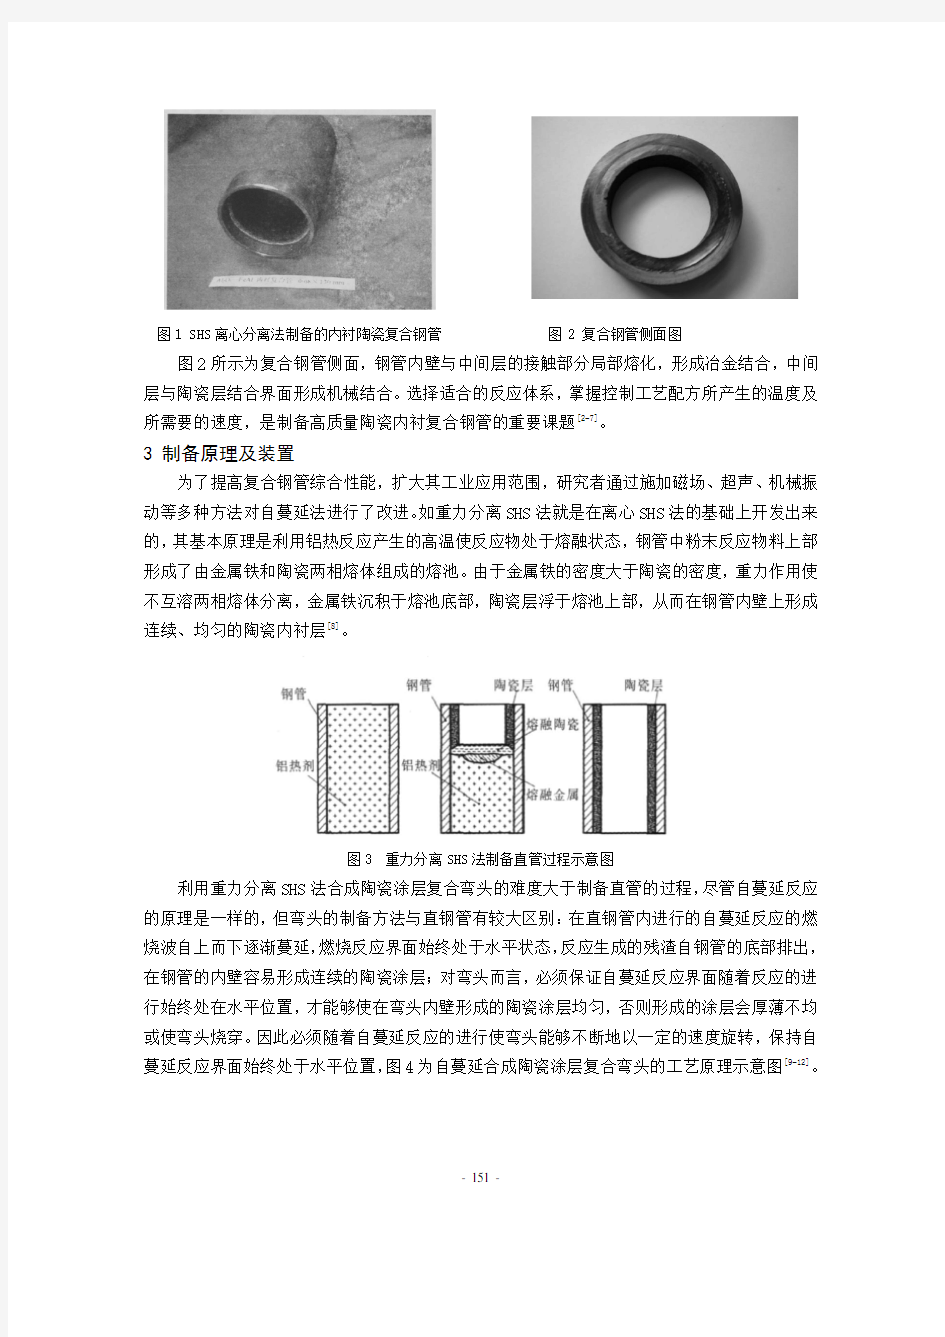 25 自蔓延法制备陶瓷内衬复合管的研究进展(陈文君)